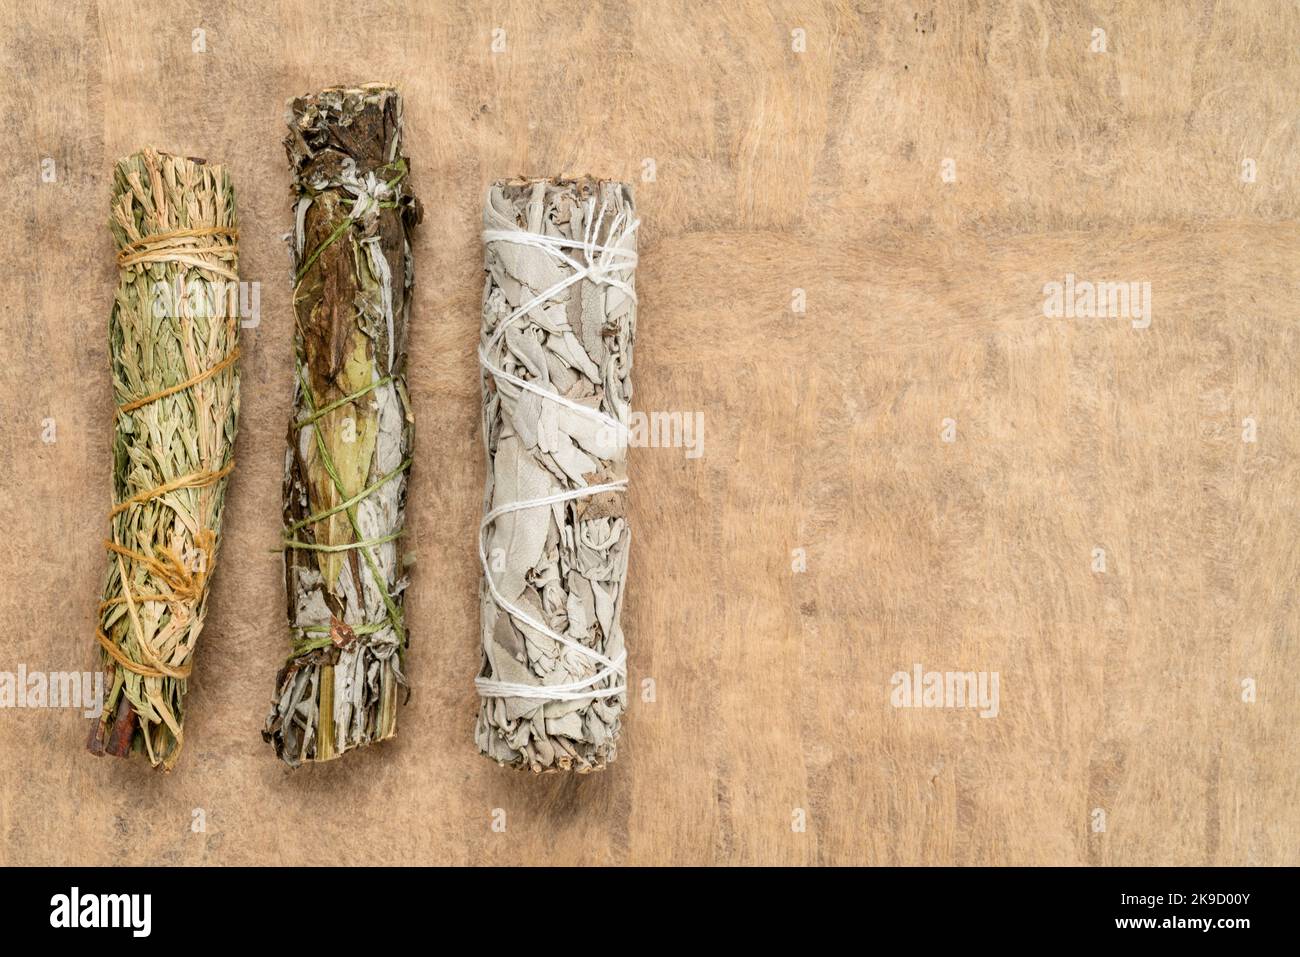 Weißer Salbei, Beifuß und siskiyou Zedernholz-Räucherstäbchen auf einem strukturierten Rindenpapier mit einem Kopierraum, Aromatherapie-Konzept Stockfoto